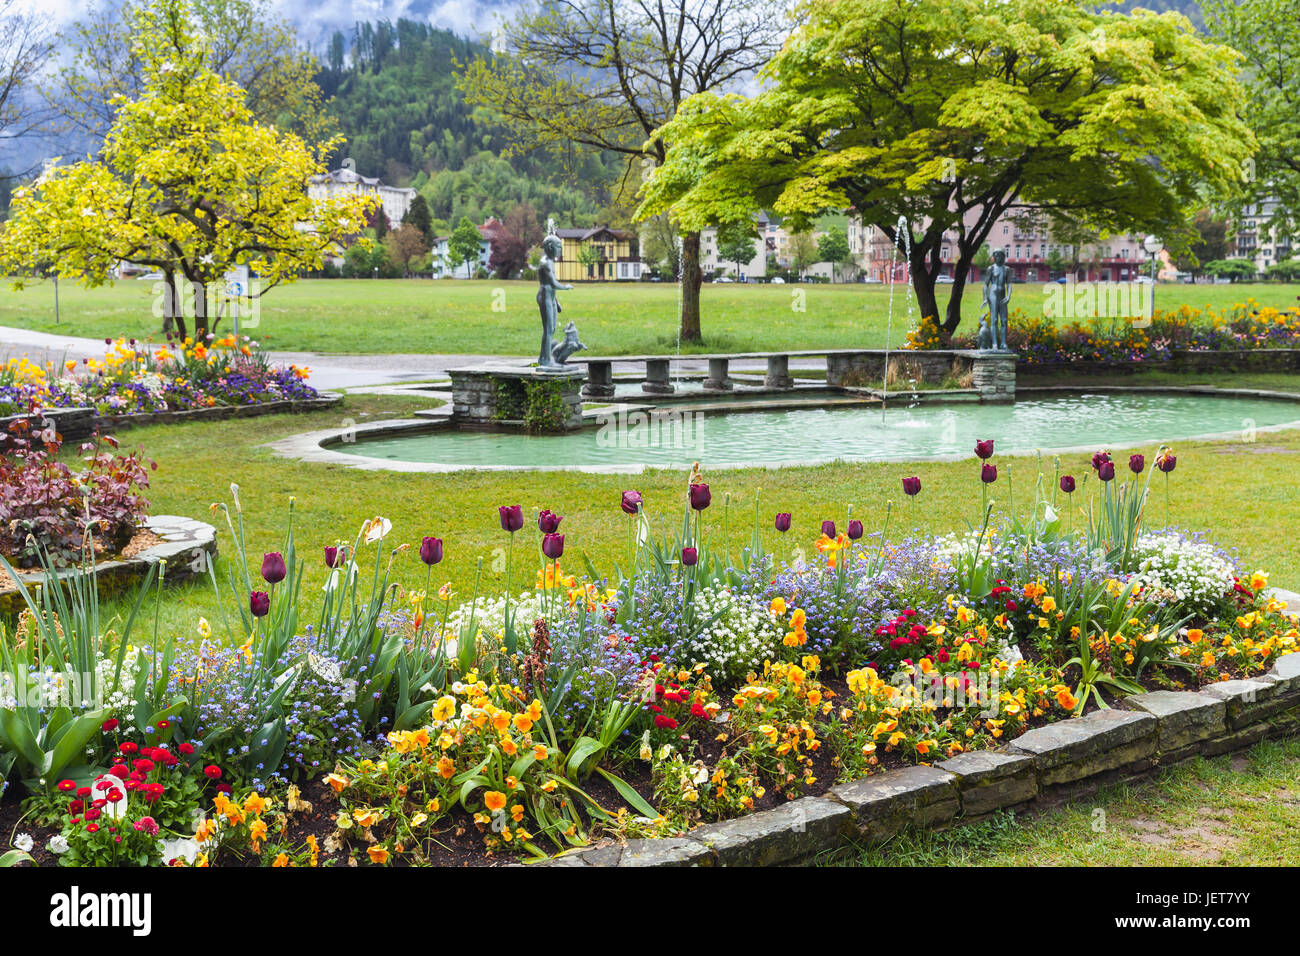 Blumen im öffentlichen Stadtpark von Interlaken, Schweiz. Frühling  Schweizer Stadt-Landschaft Stockfotografie - Alamy